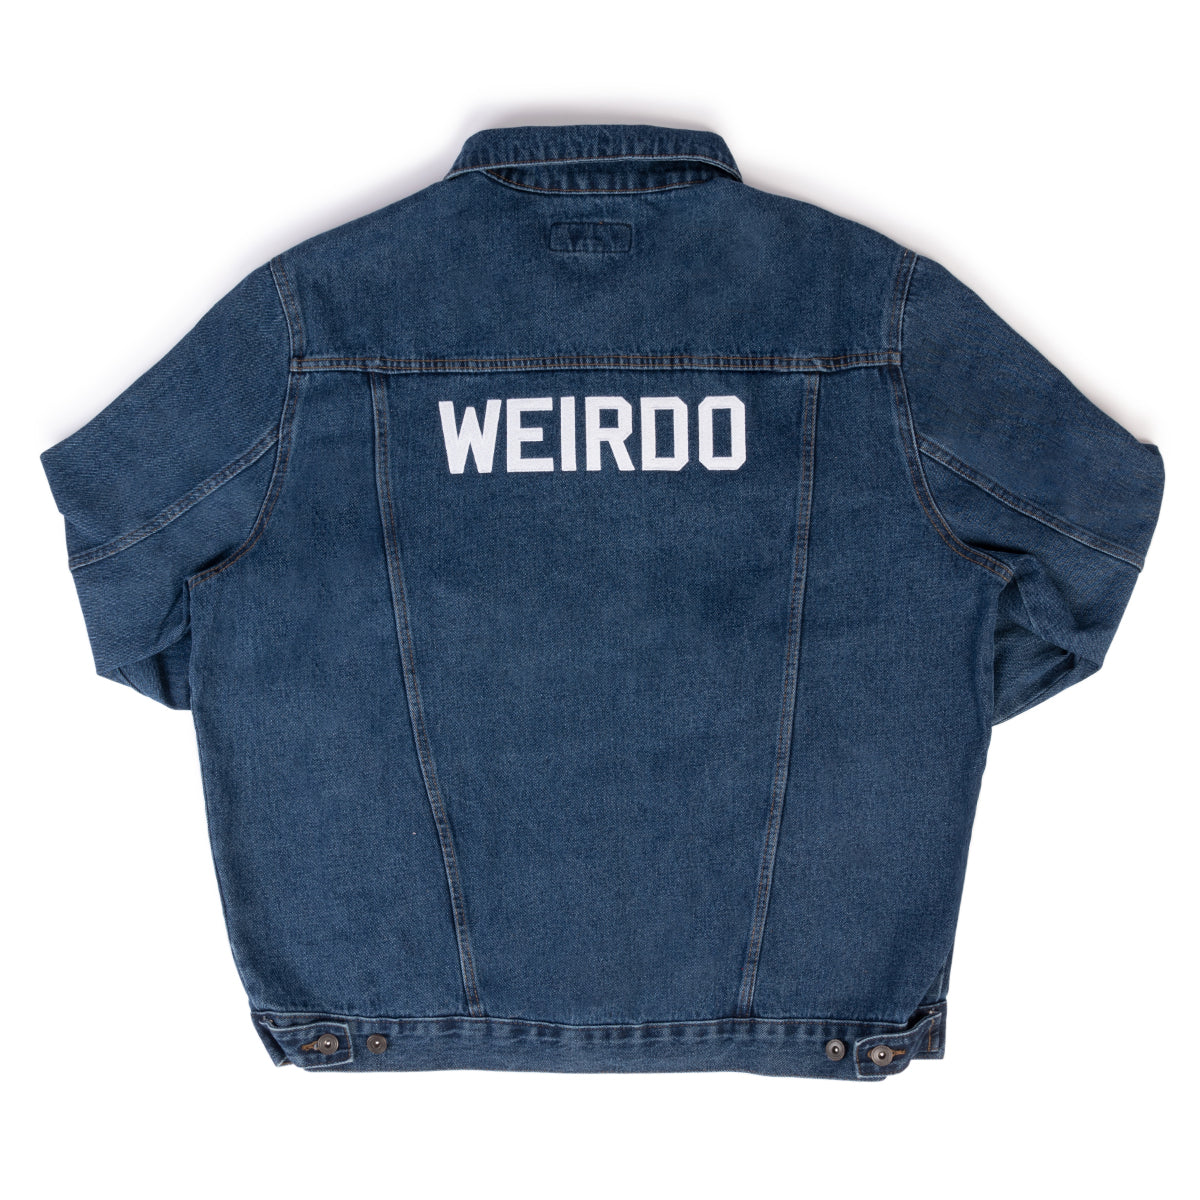 Morbid Weirdo Embroidered Denim Jacket